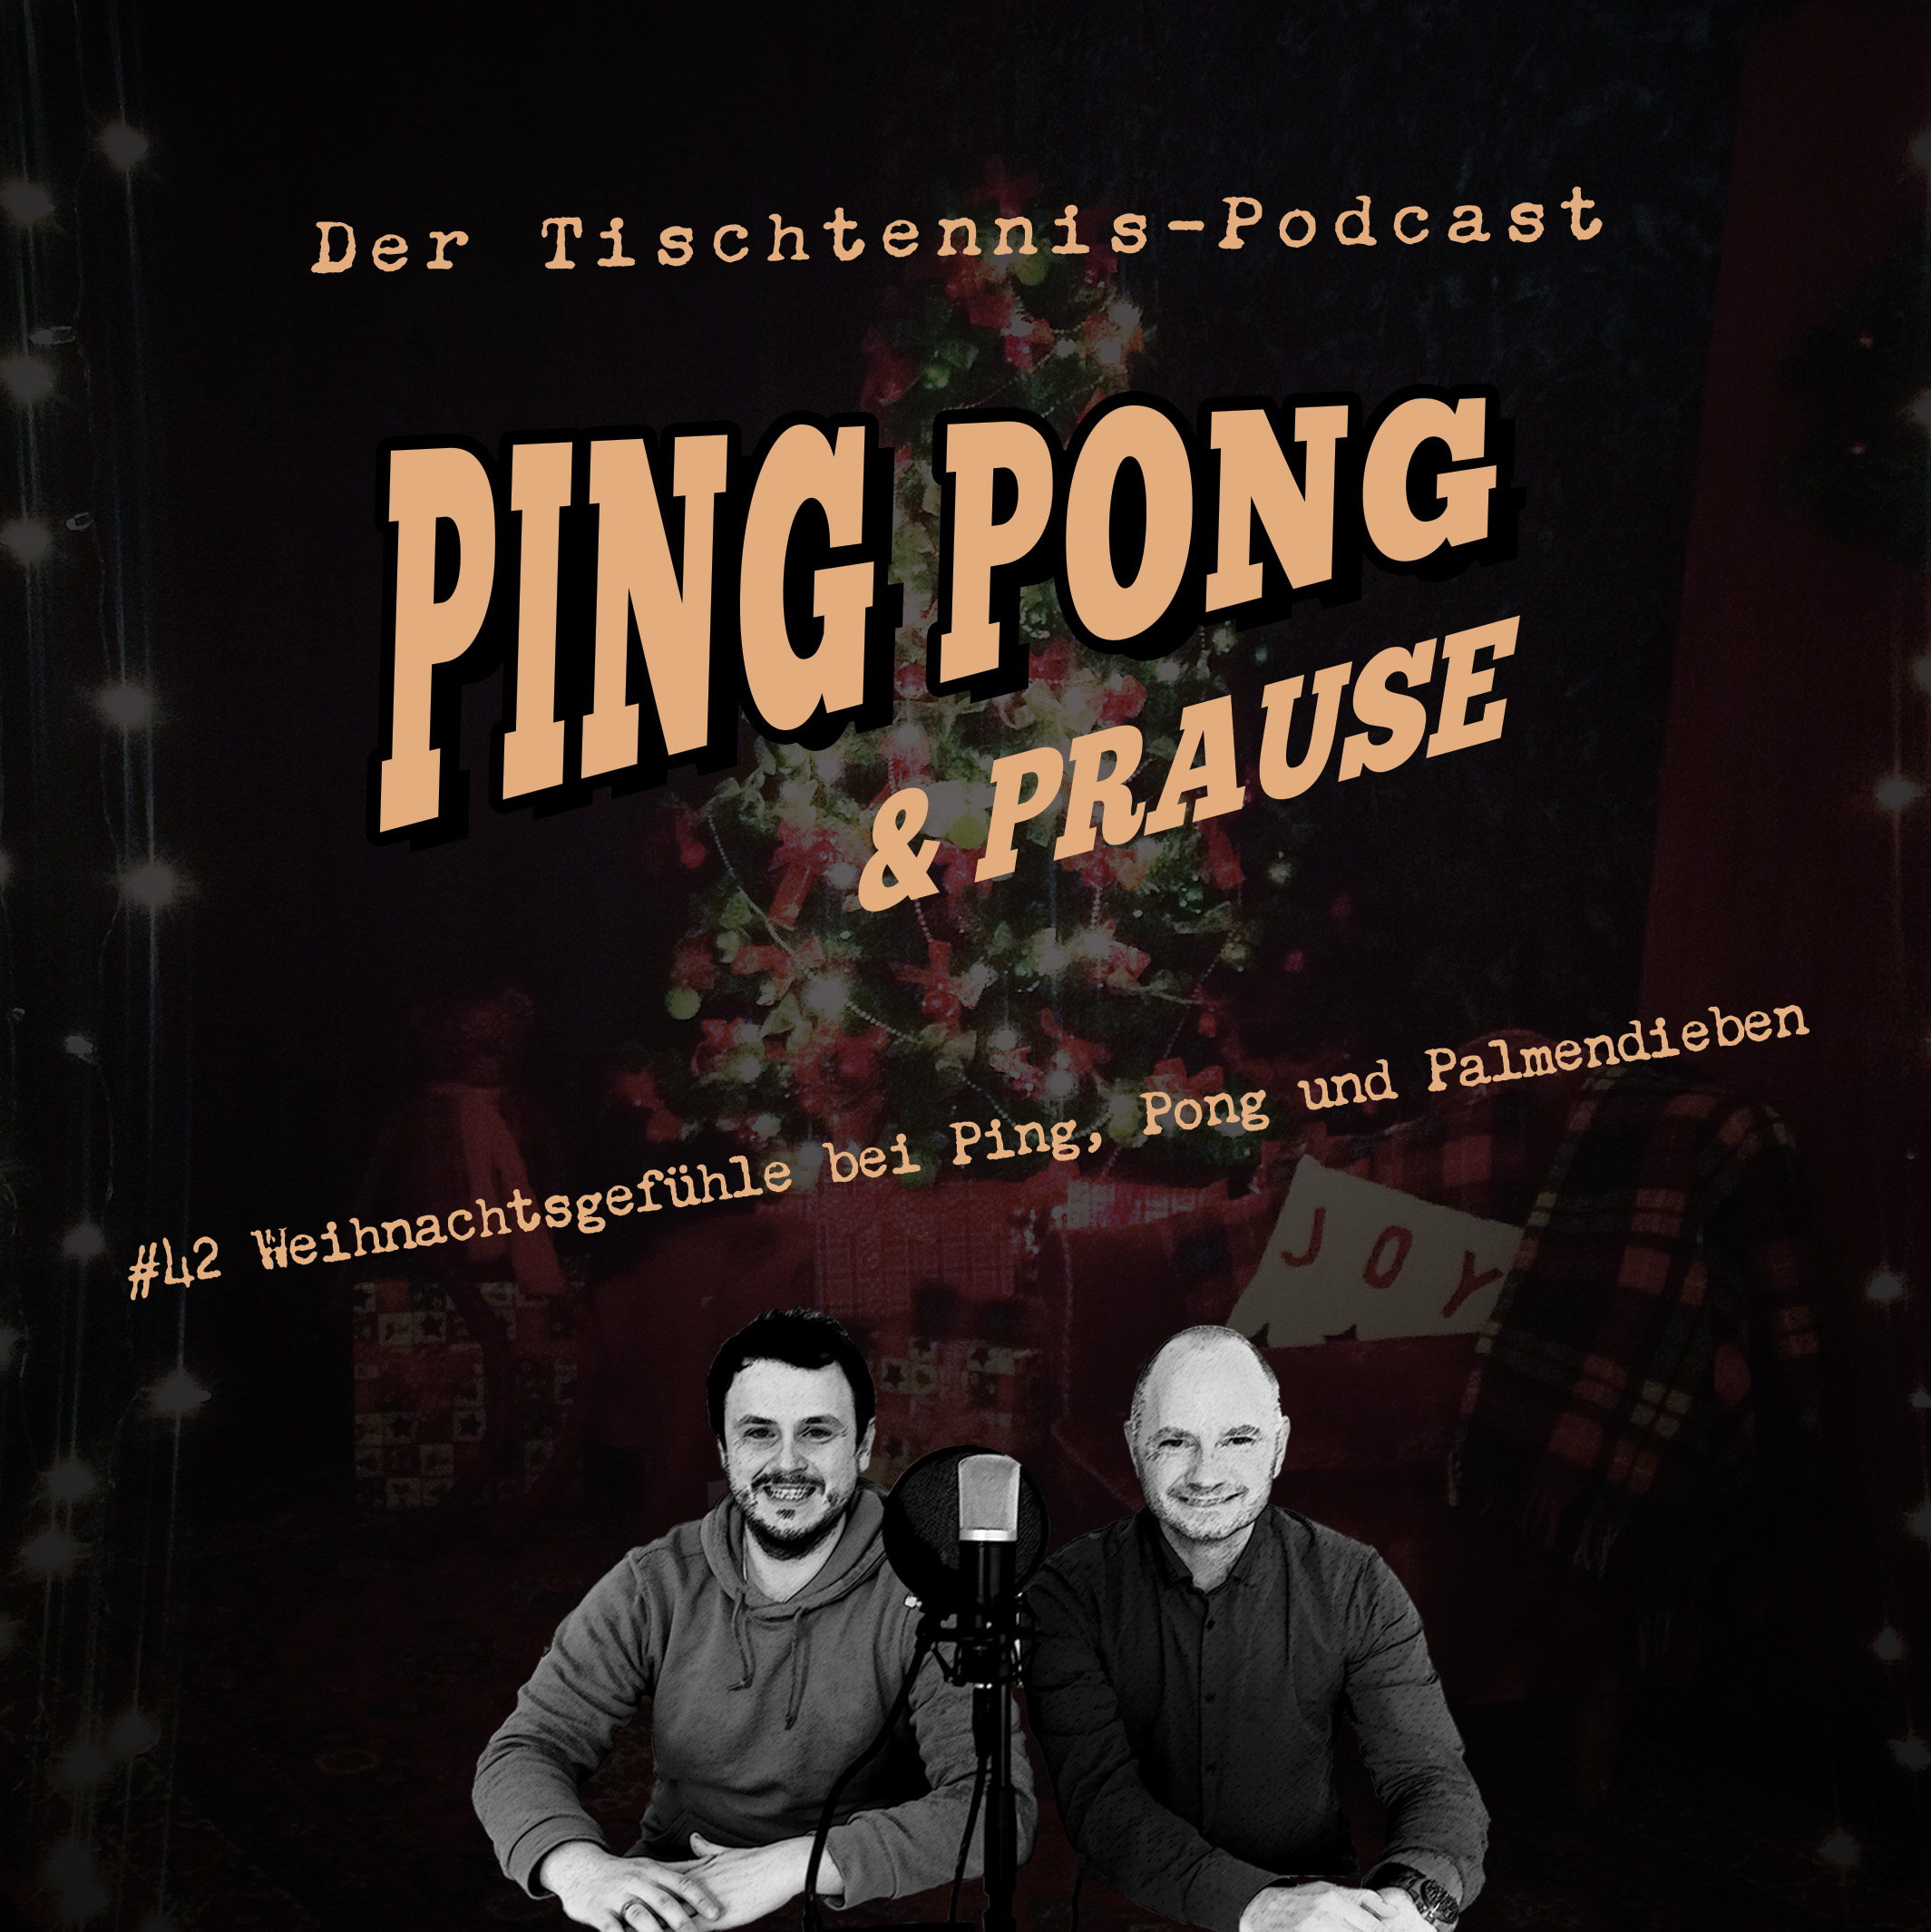 #42 Weihnachtgefühle bei Ping, Pong und Palmendieben